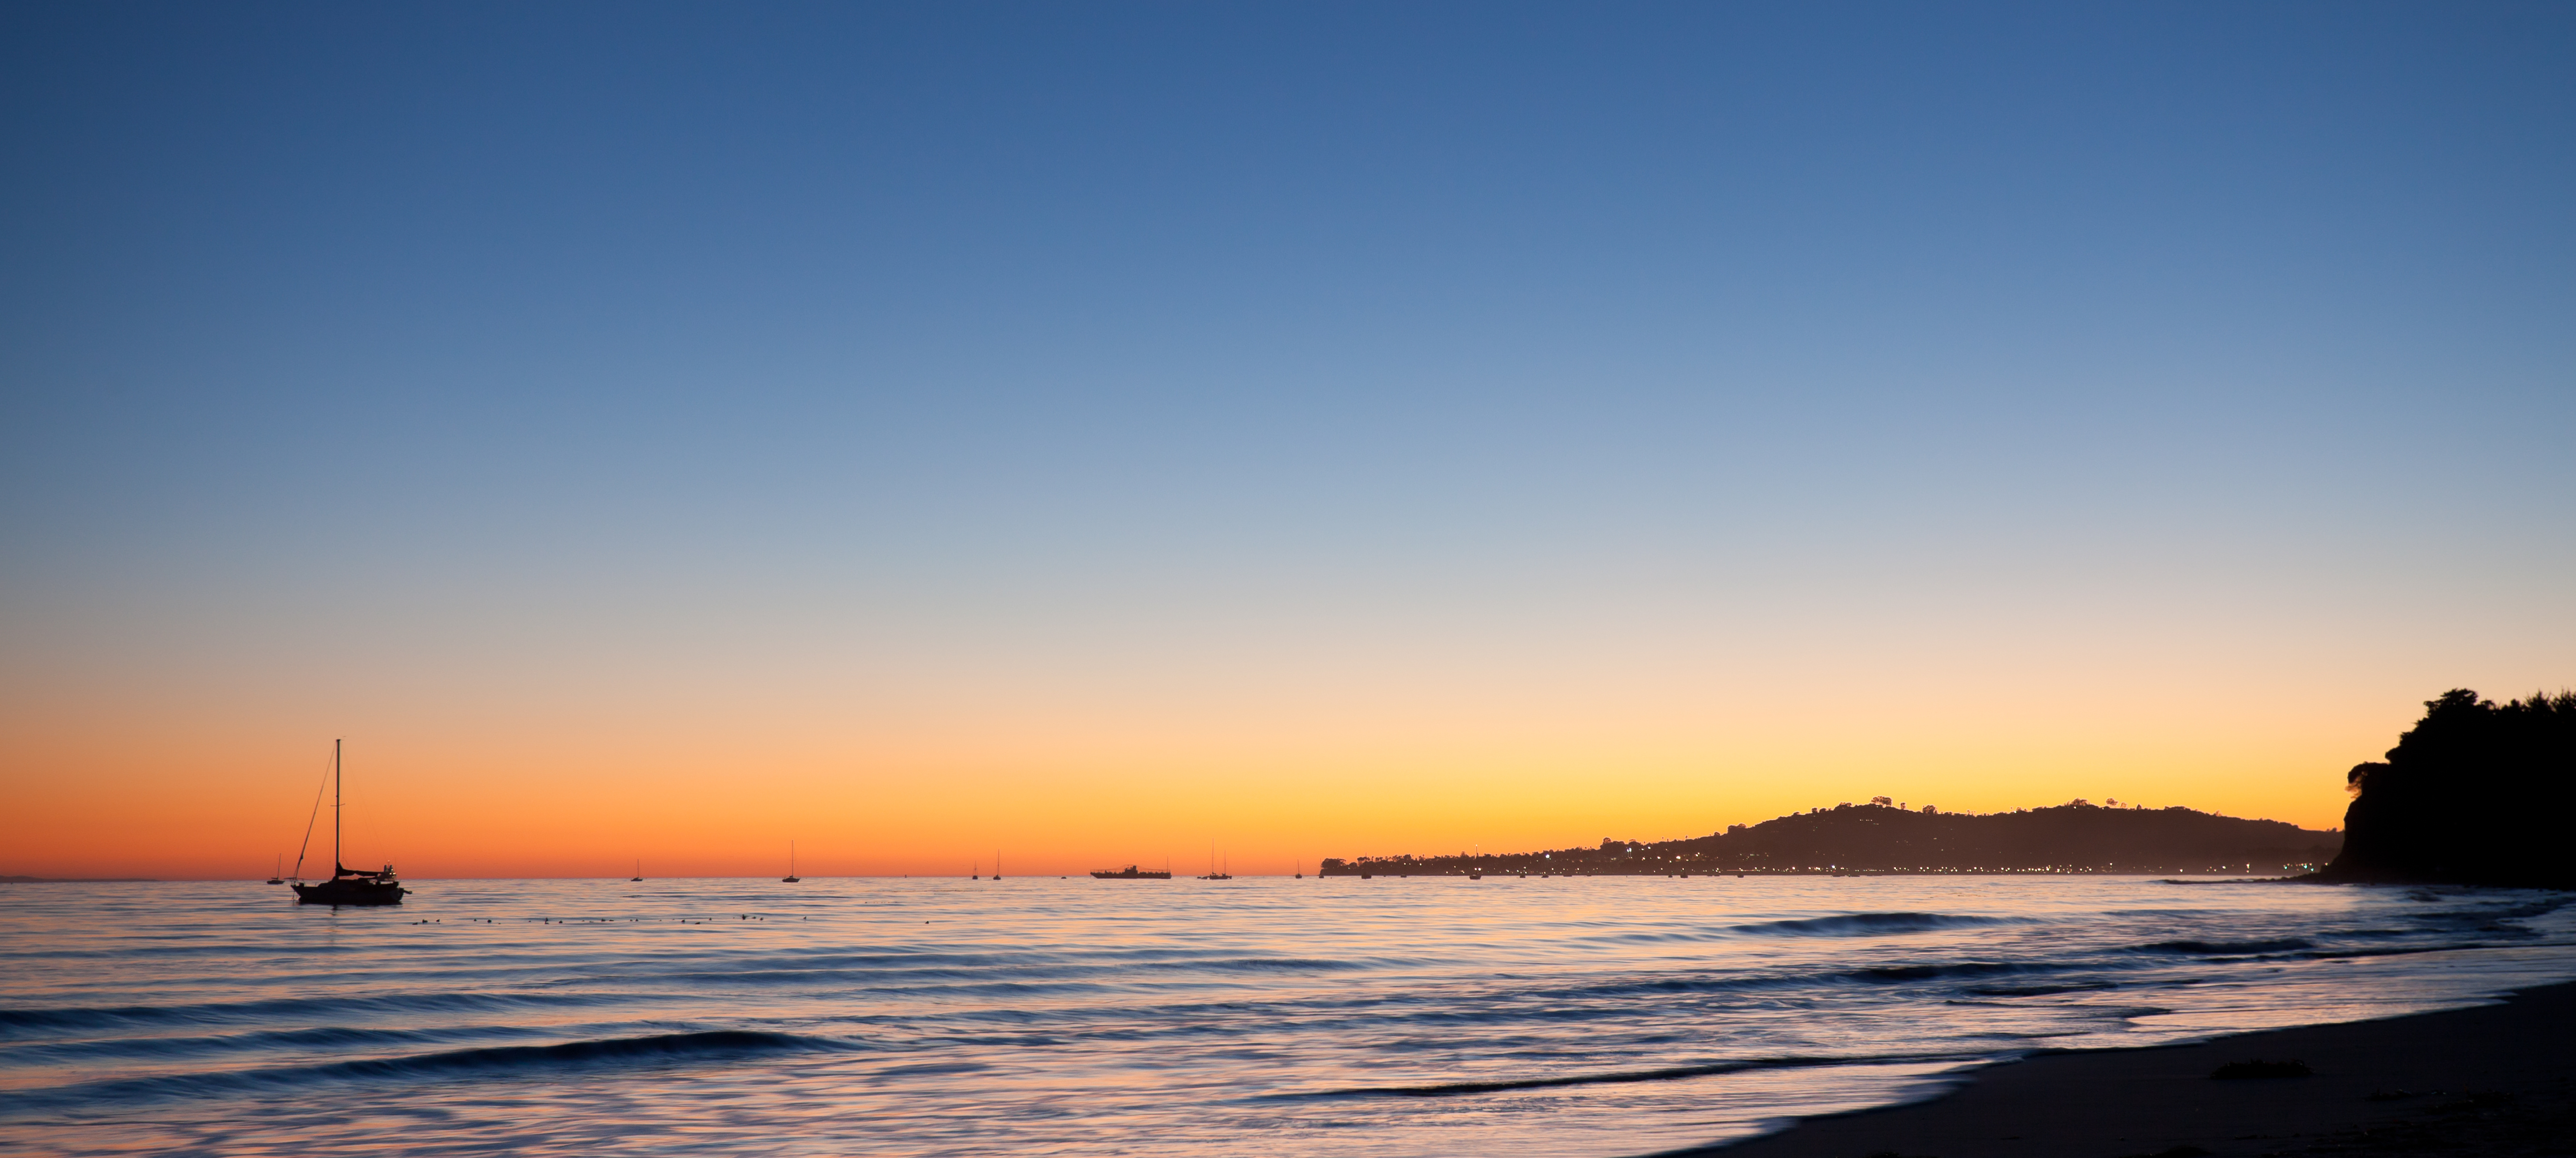 Solnedgang på en strand med seilbåt i horisonten